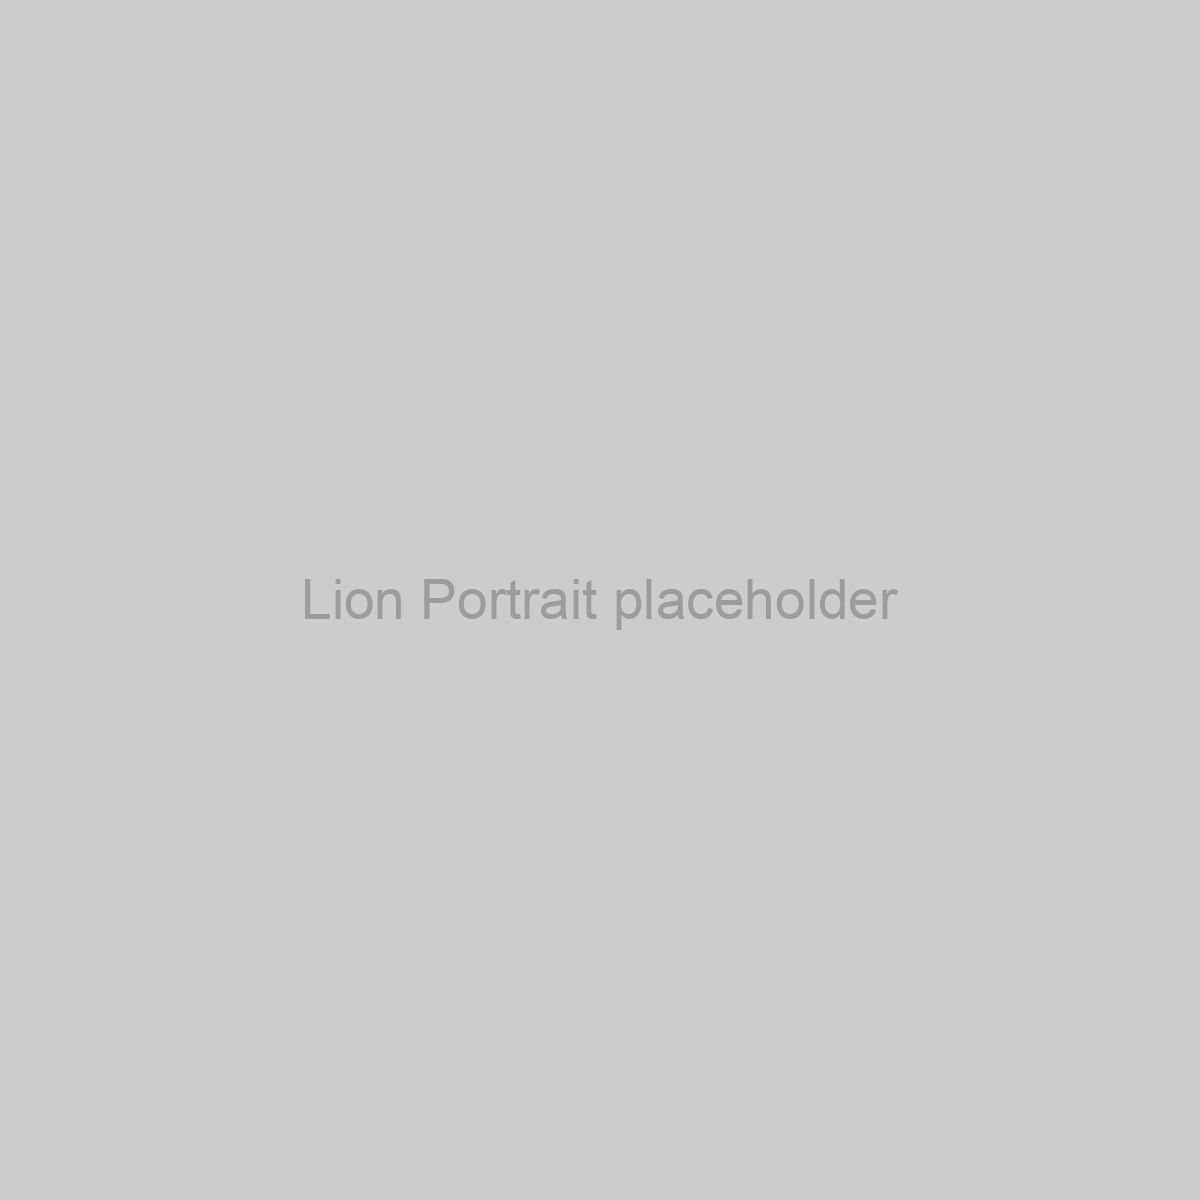 Lion Portrait Placeholder Image